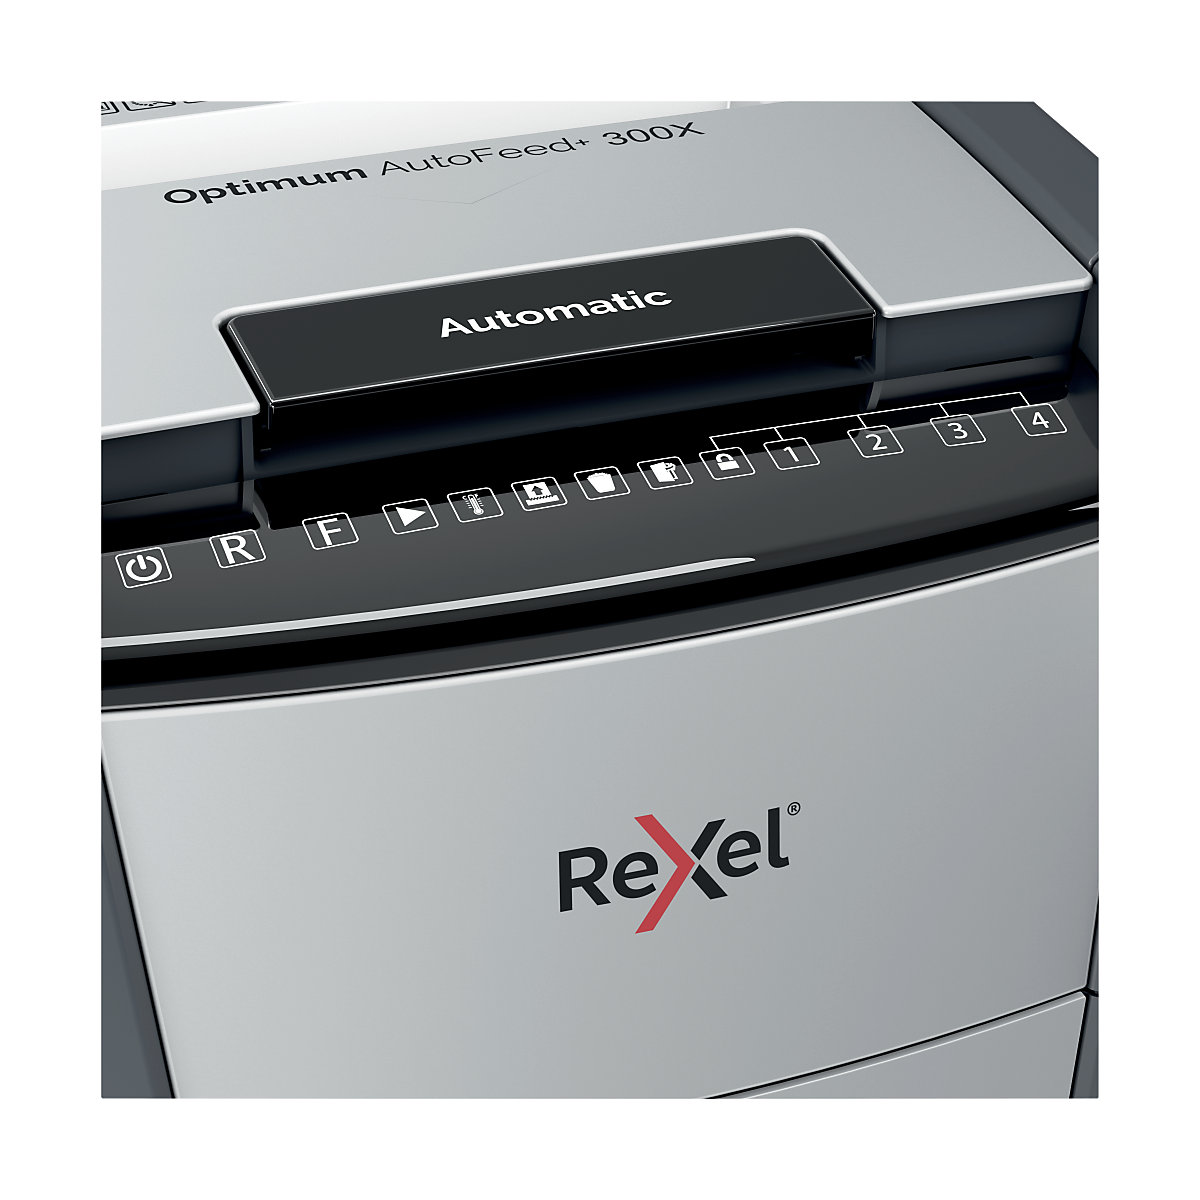 Uništavač dokumenata Optimum AutoFeed+ 300X – Rexel (Prikaz proizvoda 6)-5